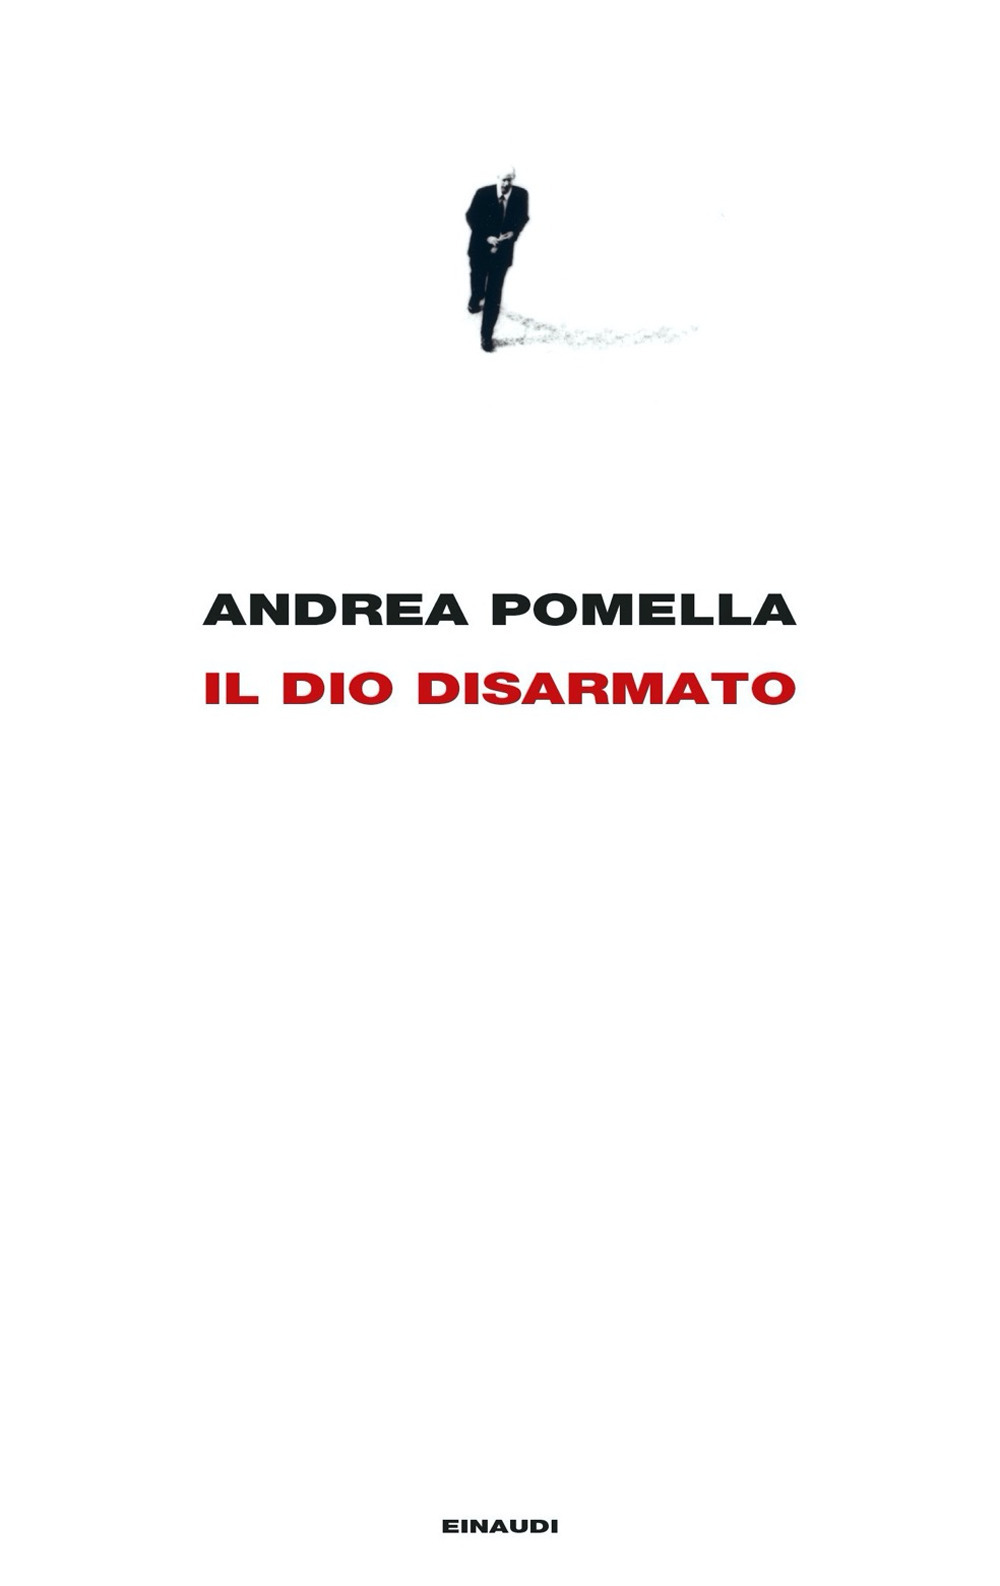 Libri Andrea Pomella - Il Dio Disarmato NUOVO SIGILLATO, EDIZIONE DEL 06/09/2022 SUBITO DISPONIBILE